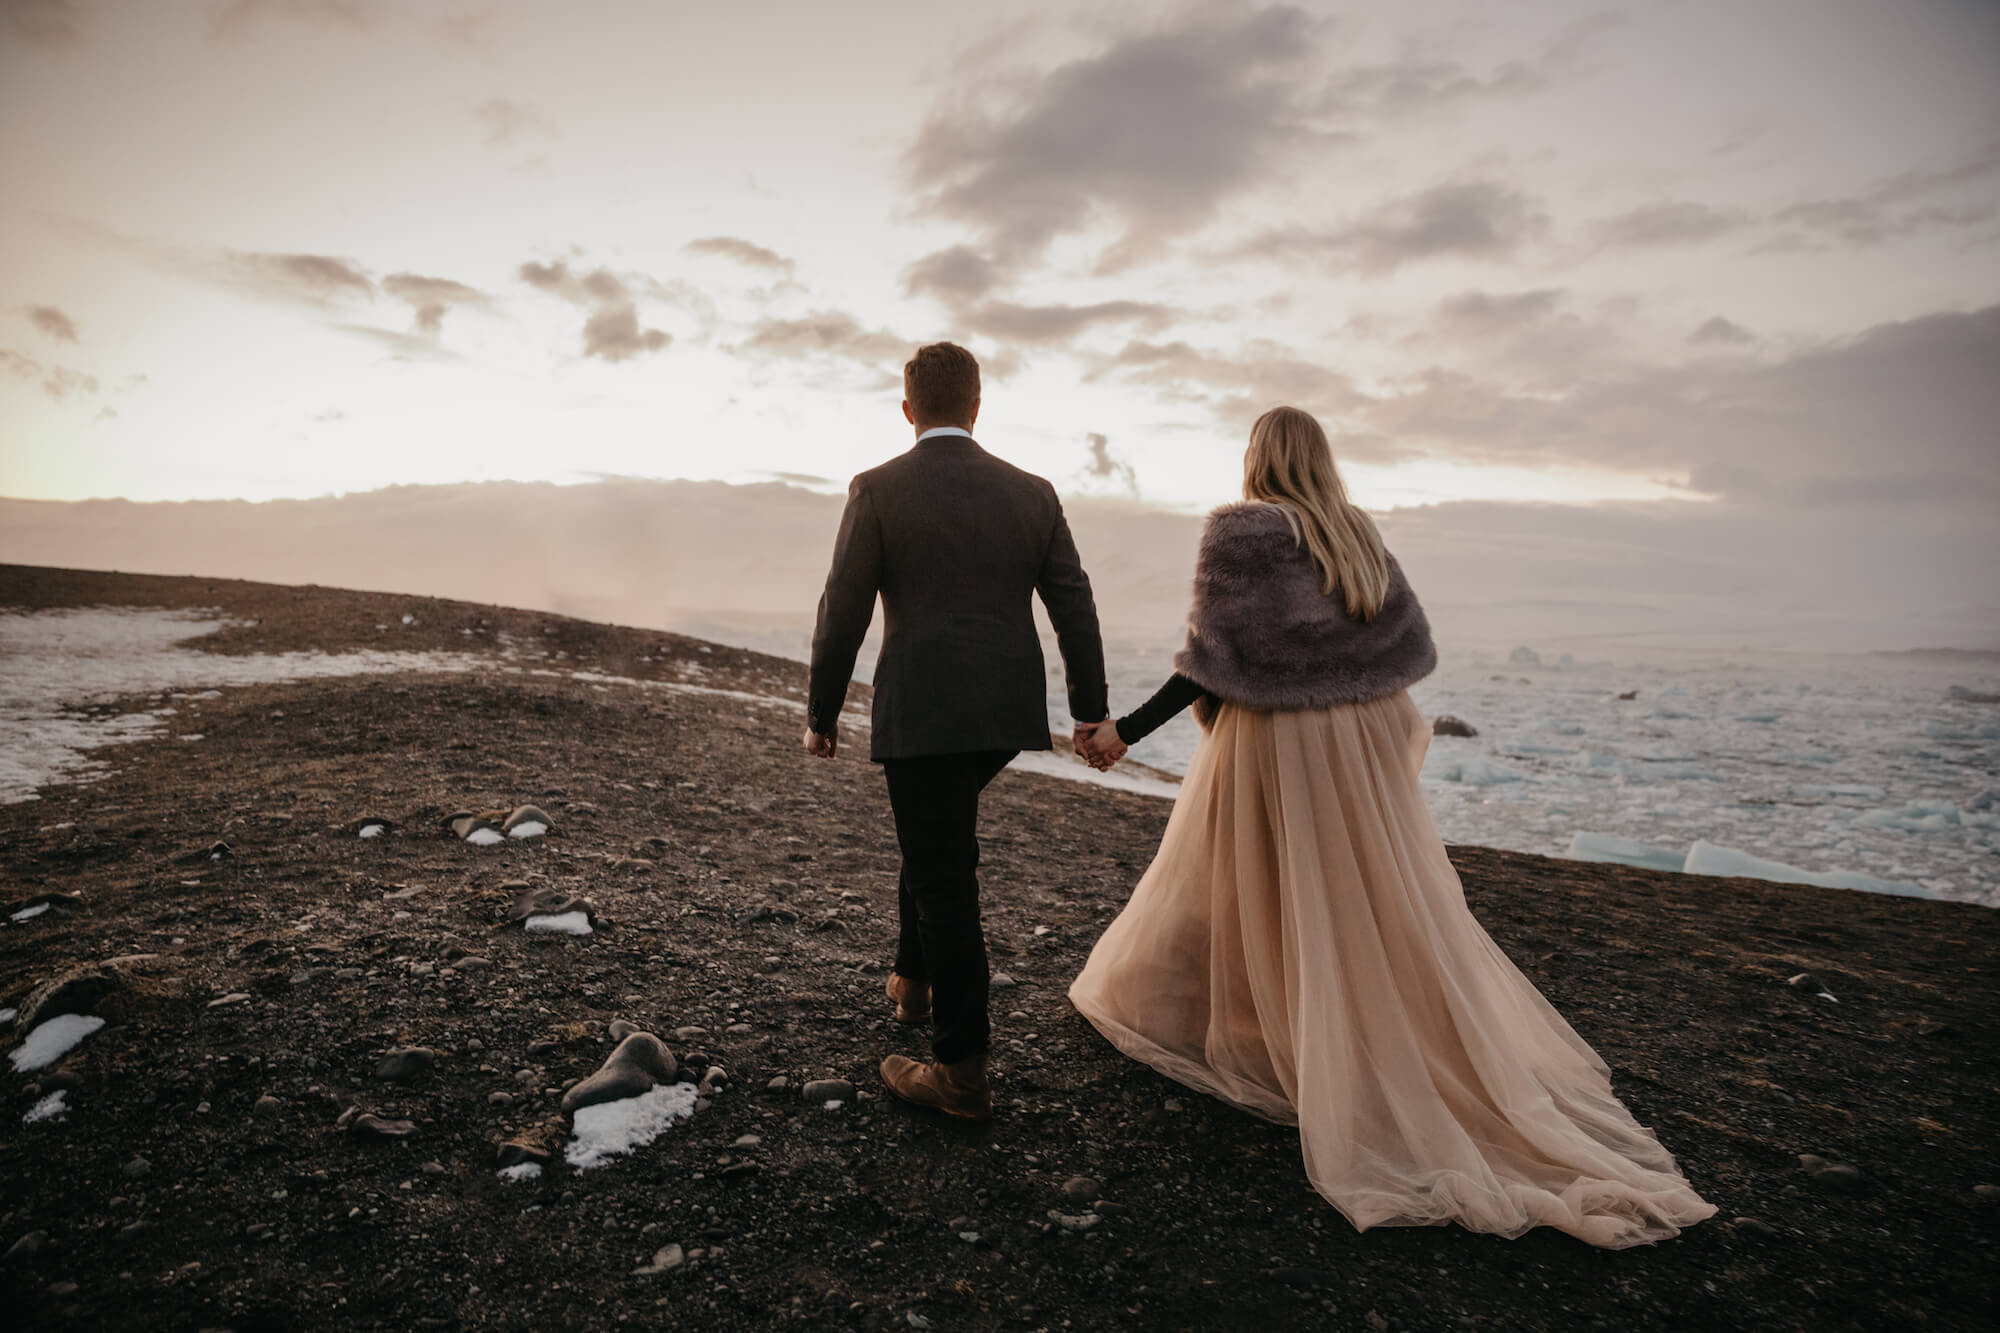 266 WallaceKiley3.3.20 Beige tyllkjol och inspiration till elopement på Island